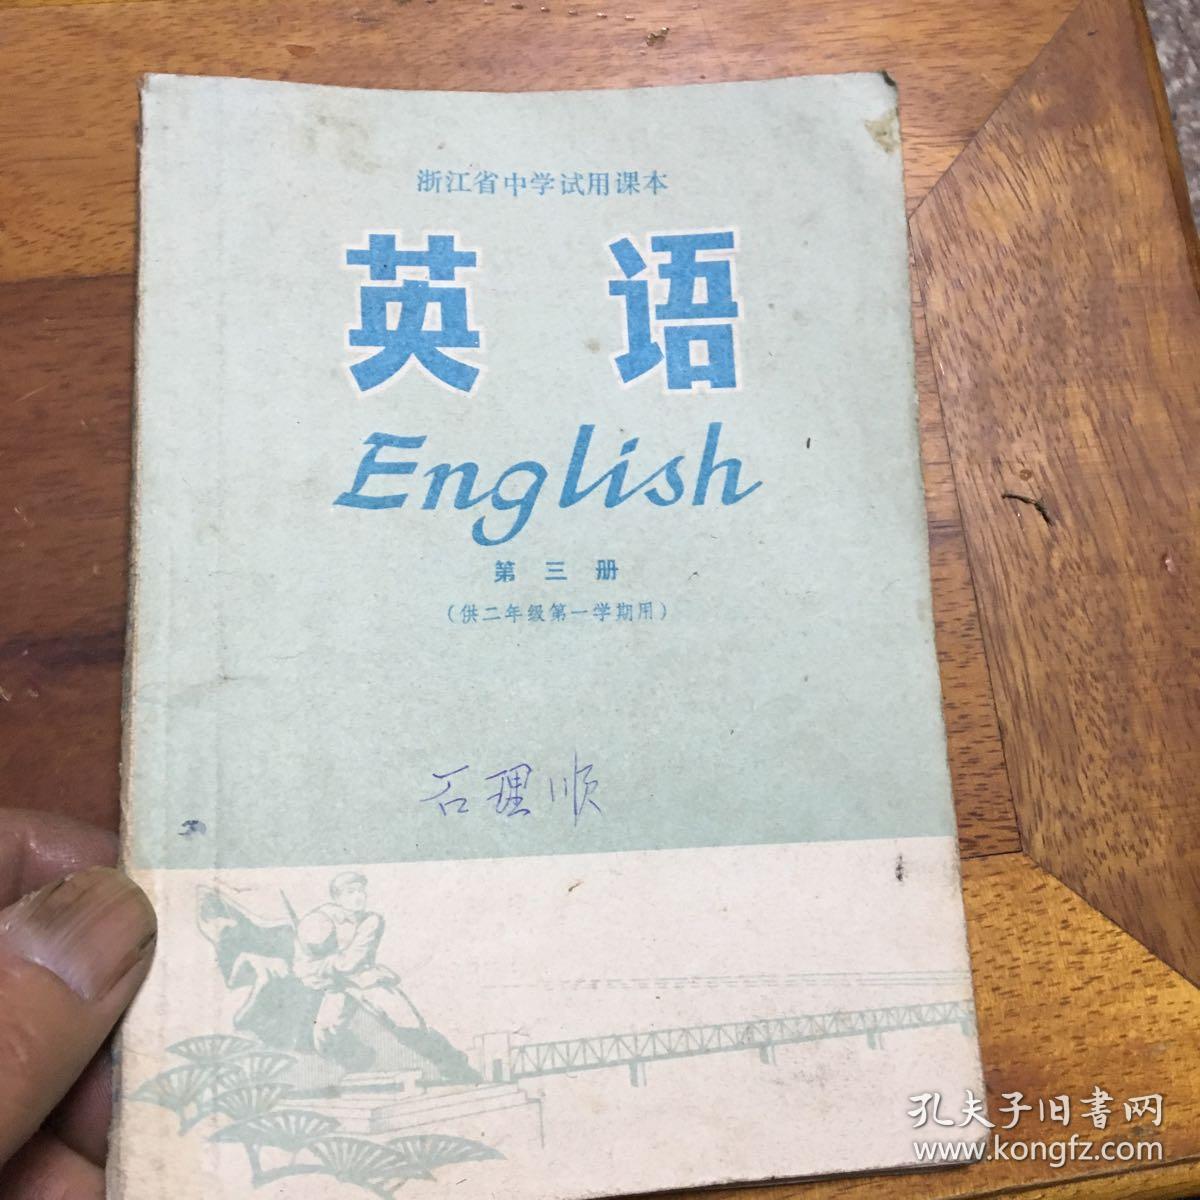 浙江省中学试用课本英语第三语